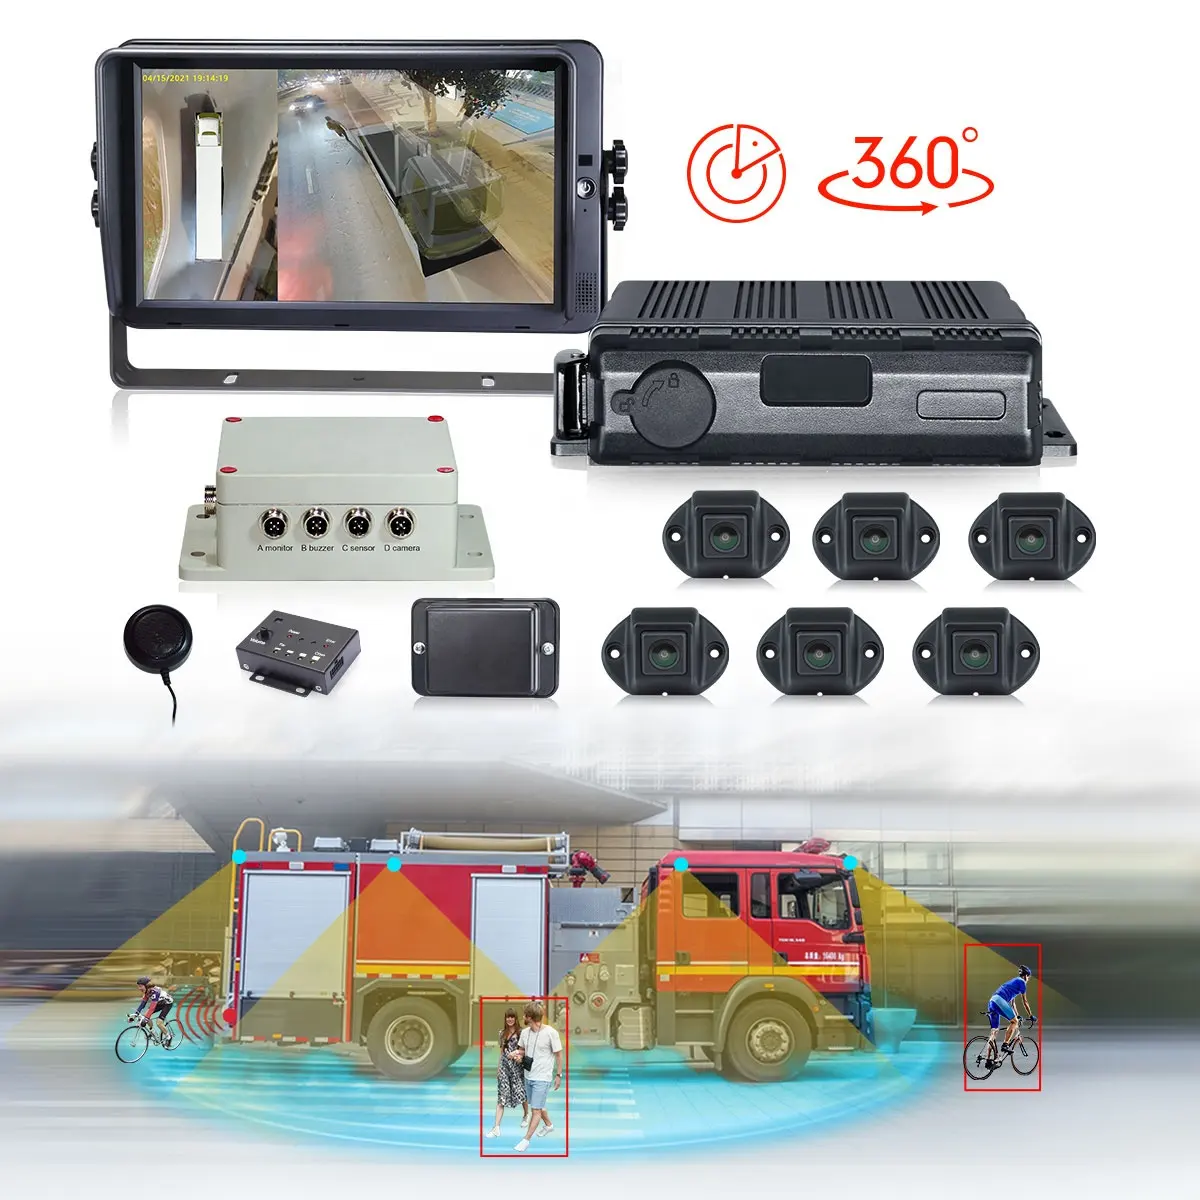 STONKAM 360 kuş görünümü araba kamera sistemi kamyon ağır araç için kamyon kamera sistemi su geçirmez 6 kanal